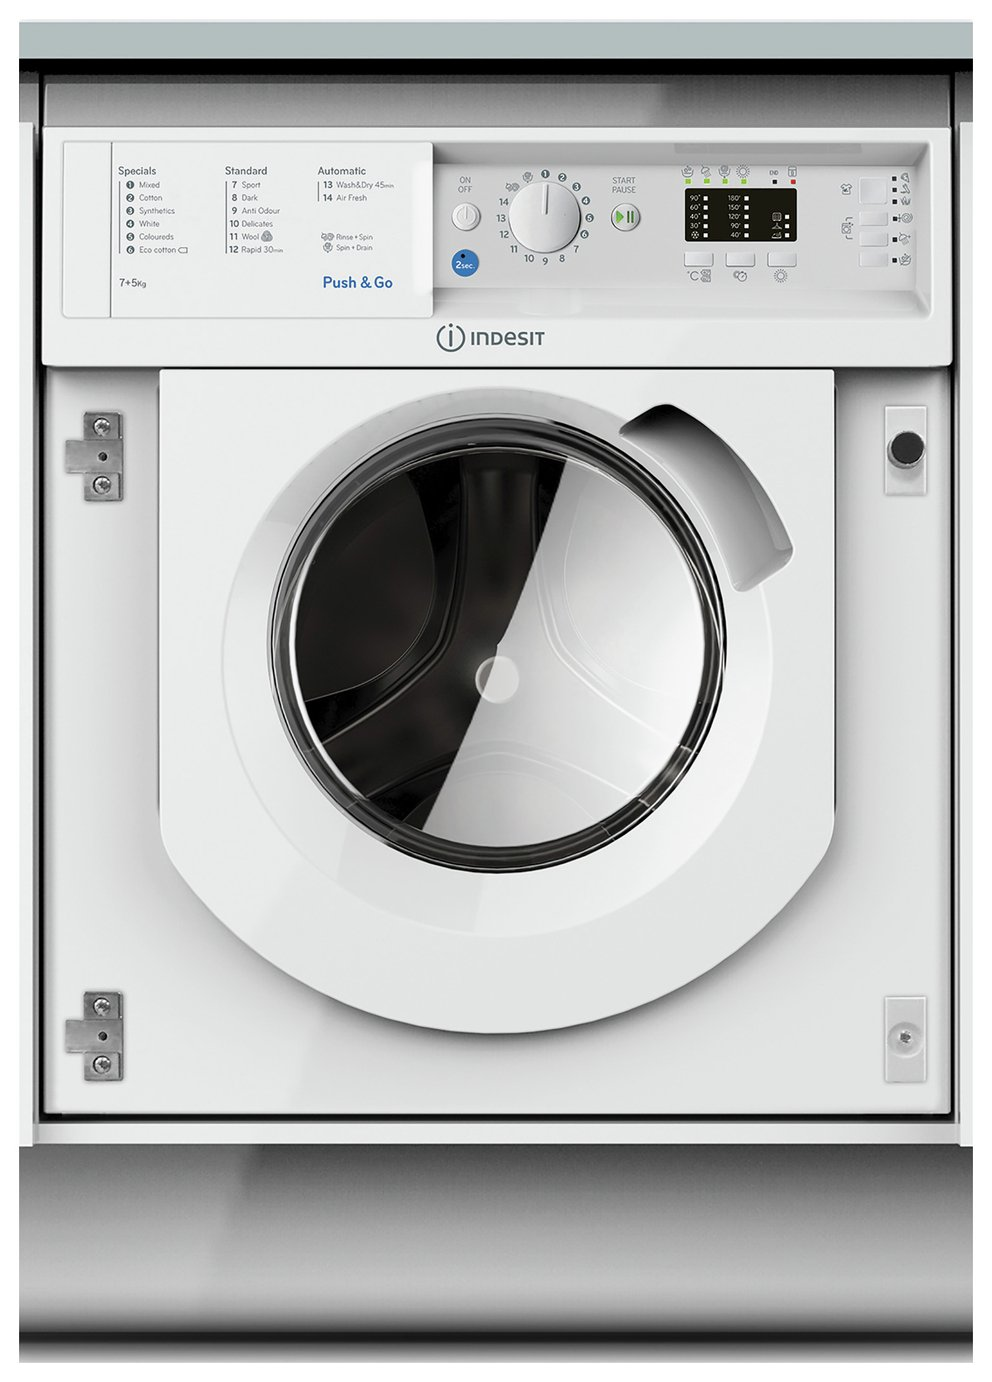 BIWDIL75125UKN Indesit BIWDIL75125UKN 7kg/5kg 1200 Spin Intergrated Washer Dryer - White